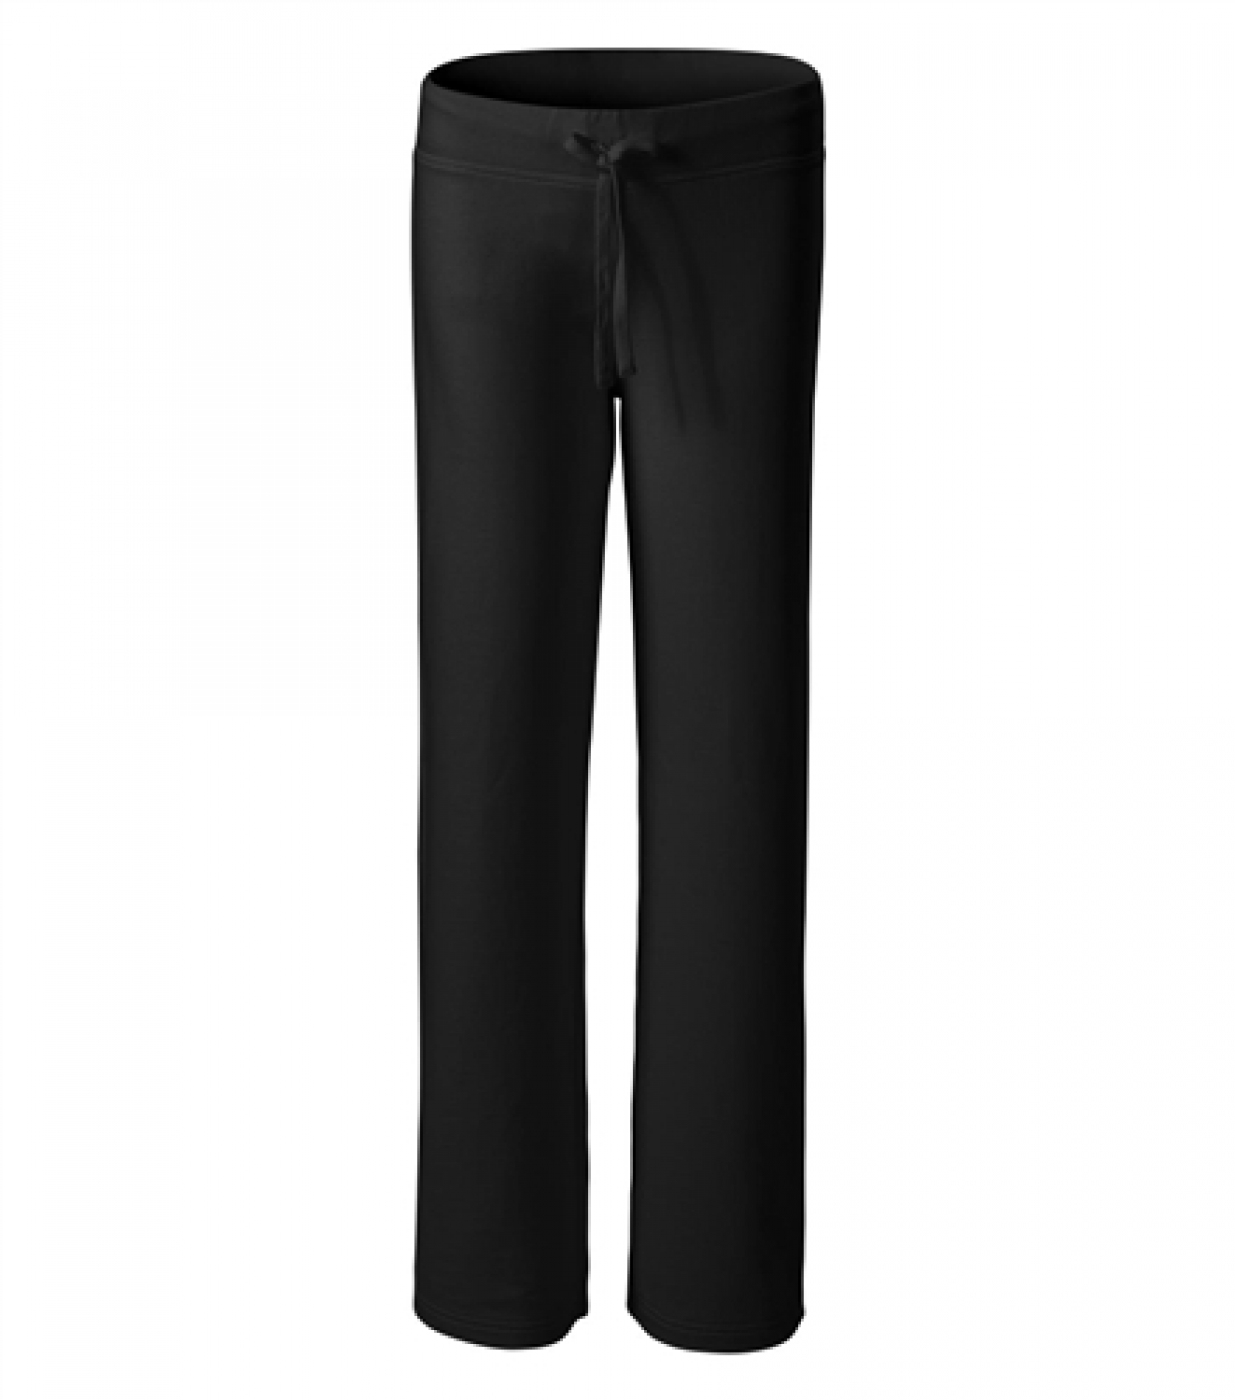 Pantalon pentru uniforma de lucru curatenie, din bumbac, model confort, de dama